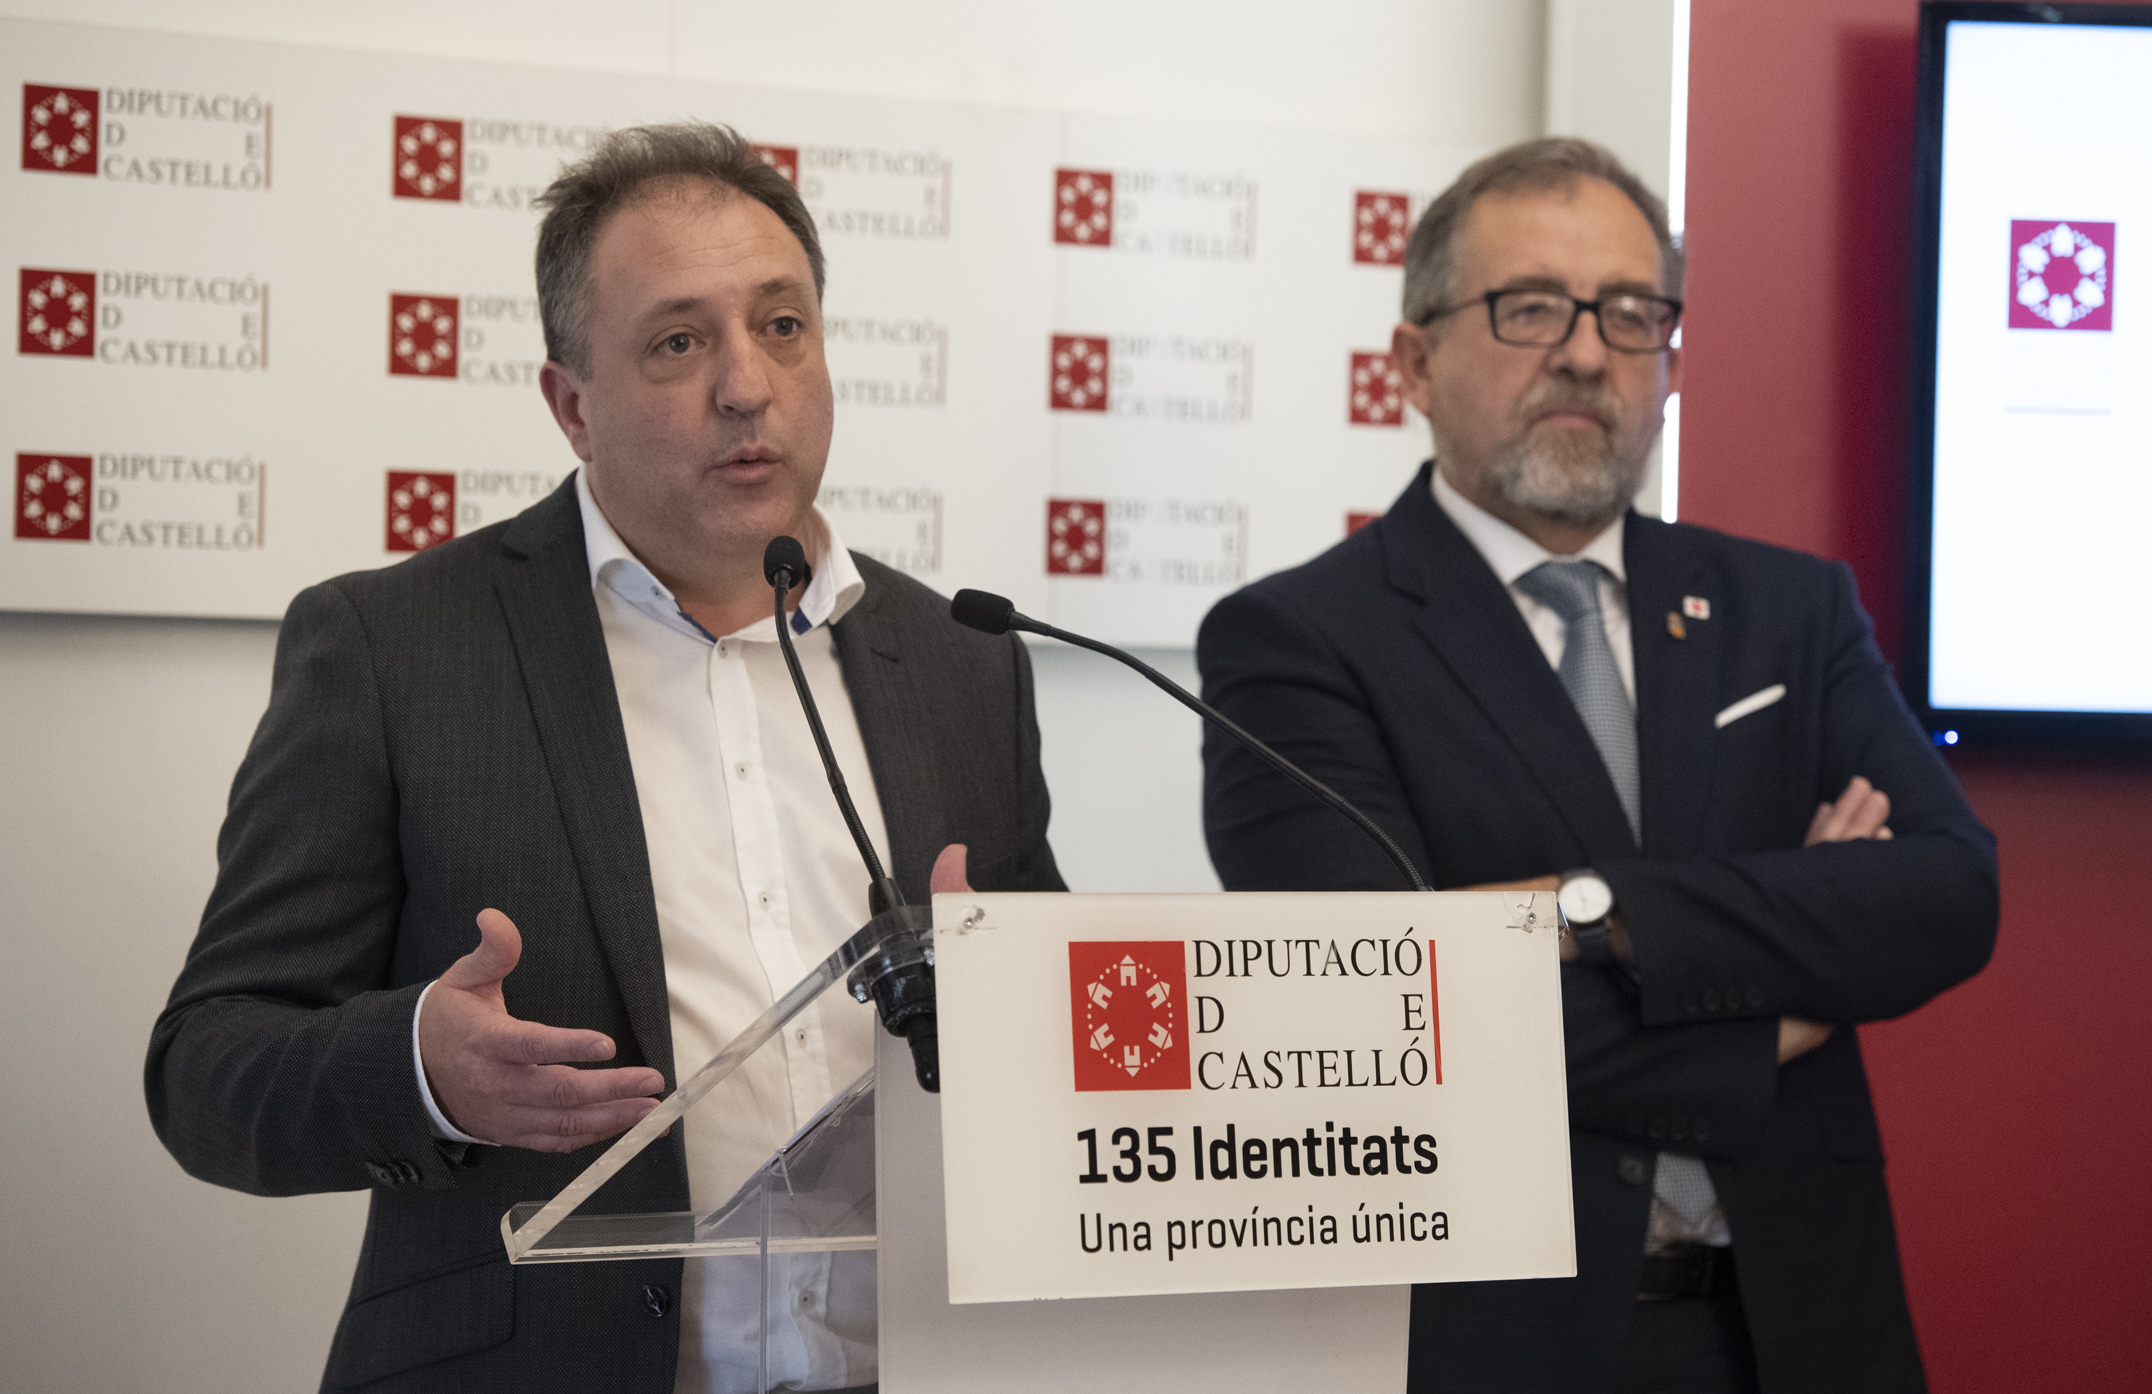 La Diputación de Castellón aprueba una modificación de créditos de 1,5 millones de euros para saldar impagos del anterior gobierno del PP